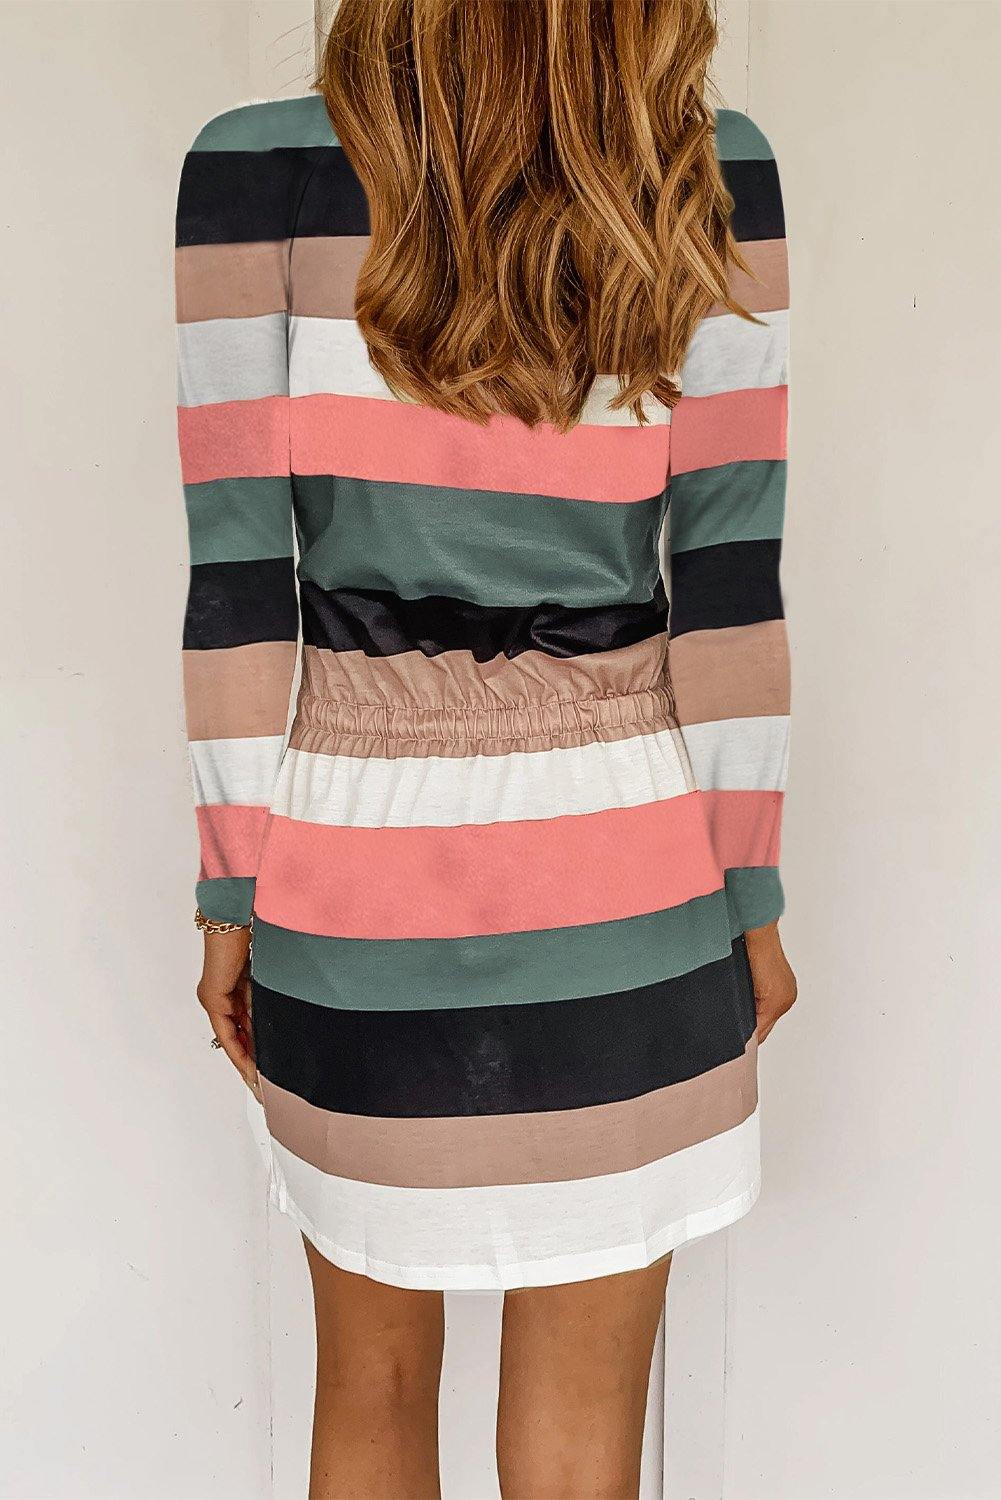 Stripe Print Colorblock Tie Waist Dress with Pocket - L & M Kee, LLC